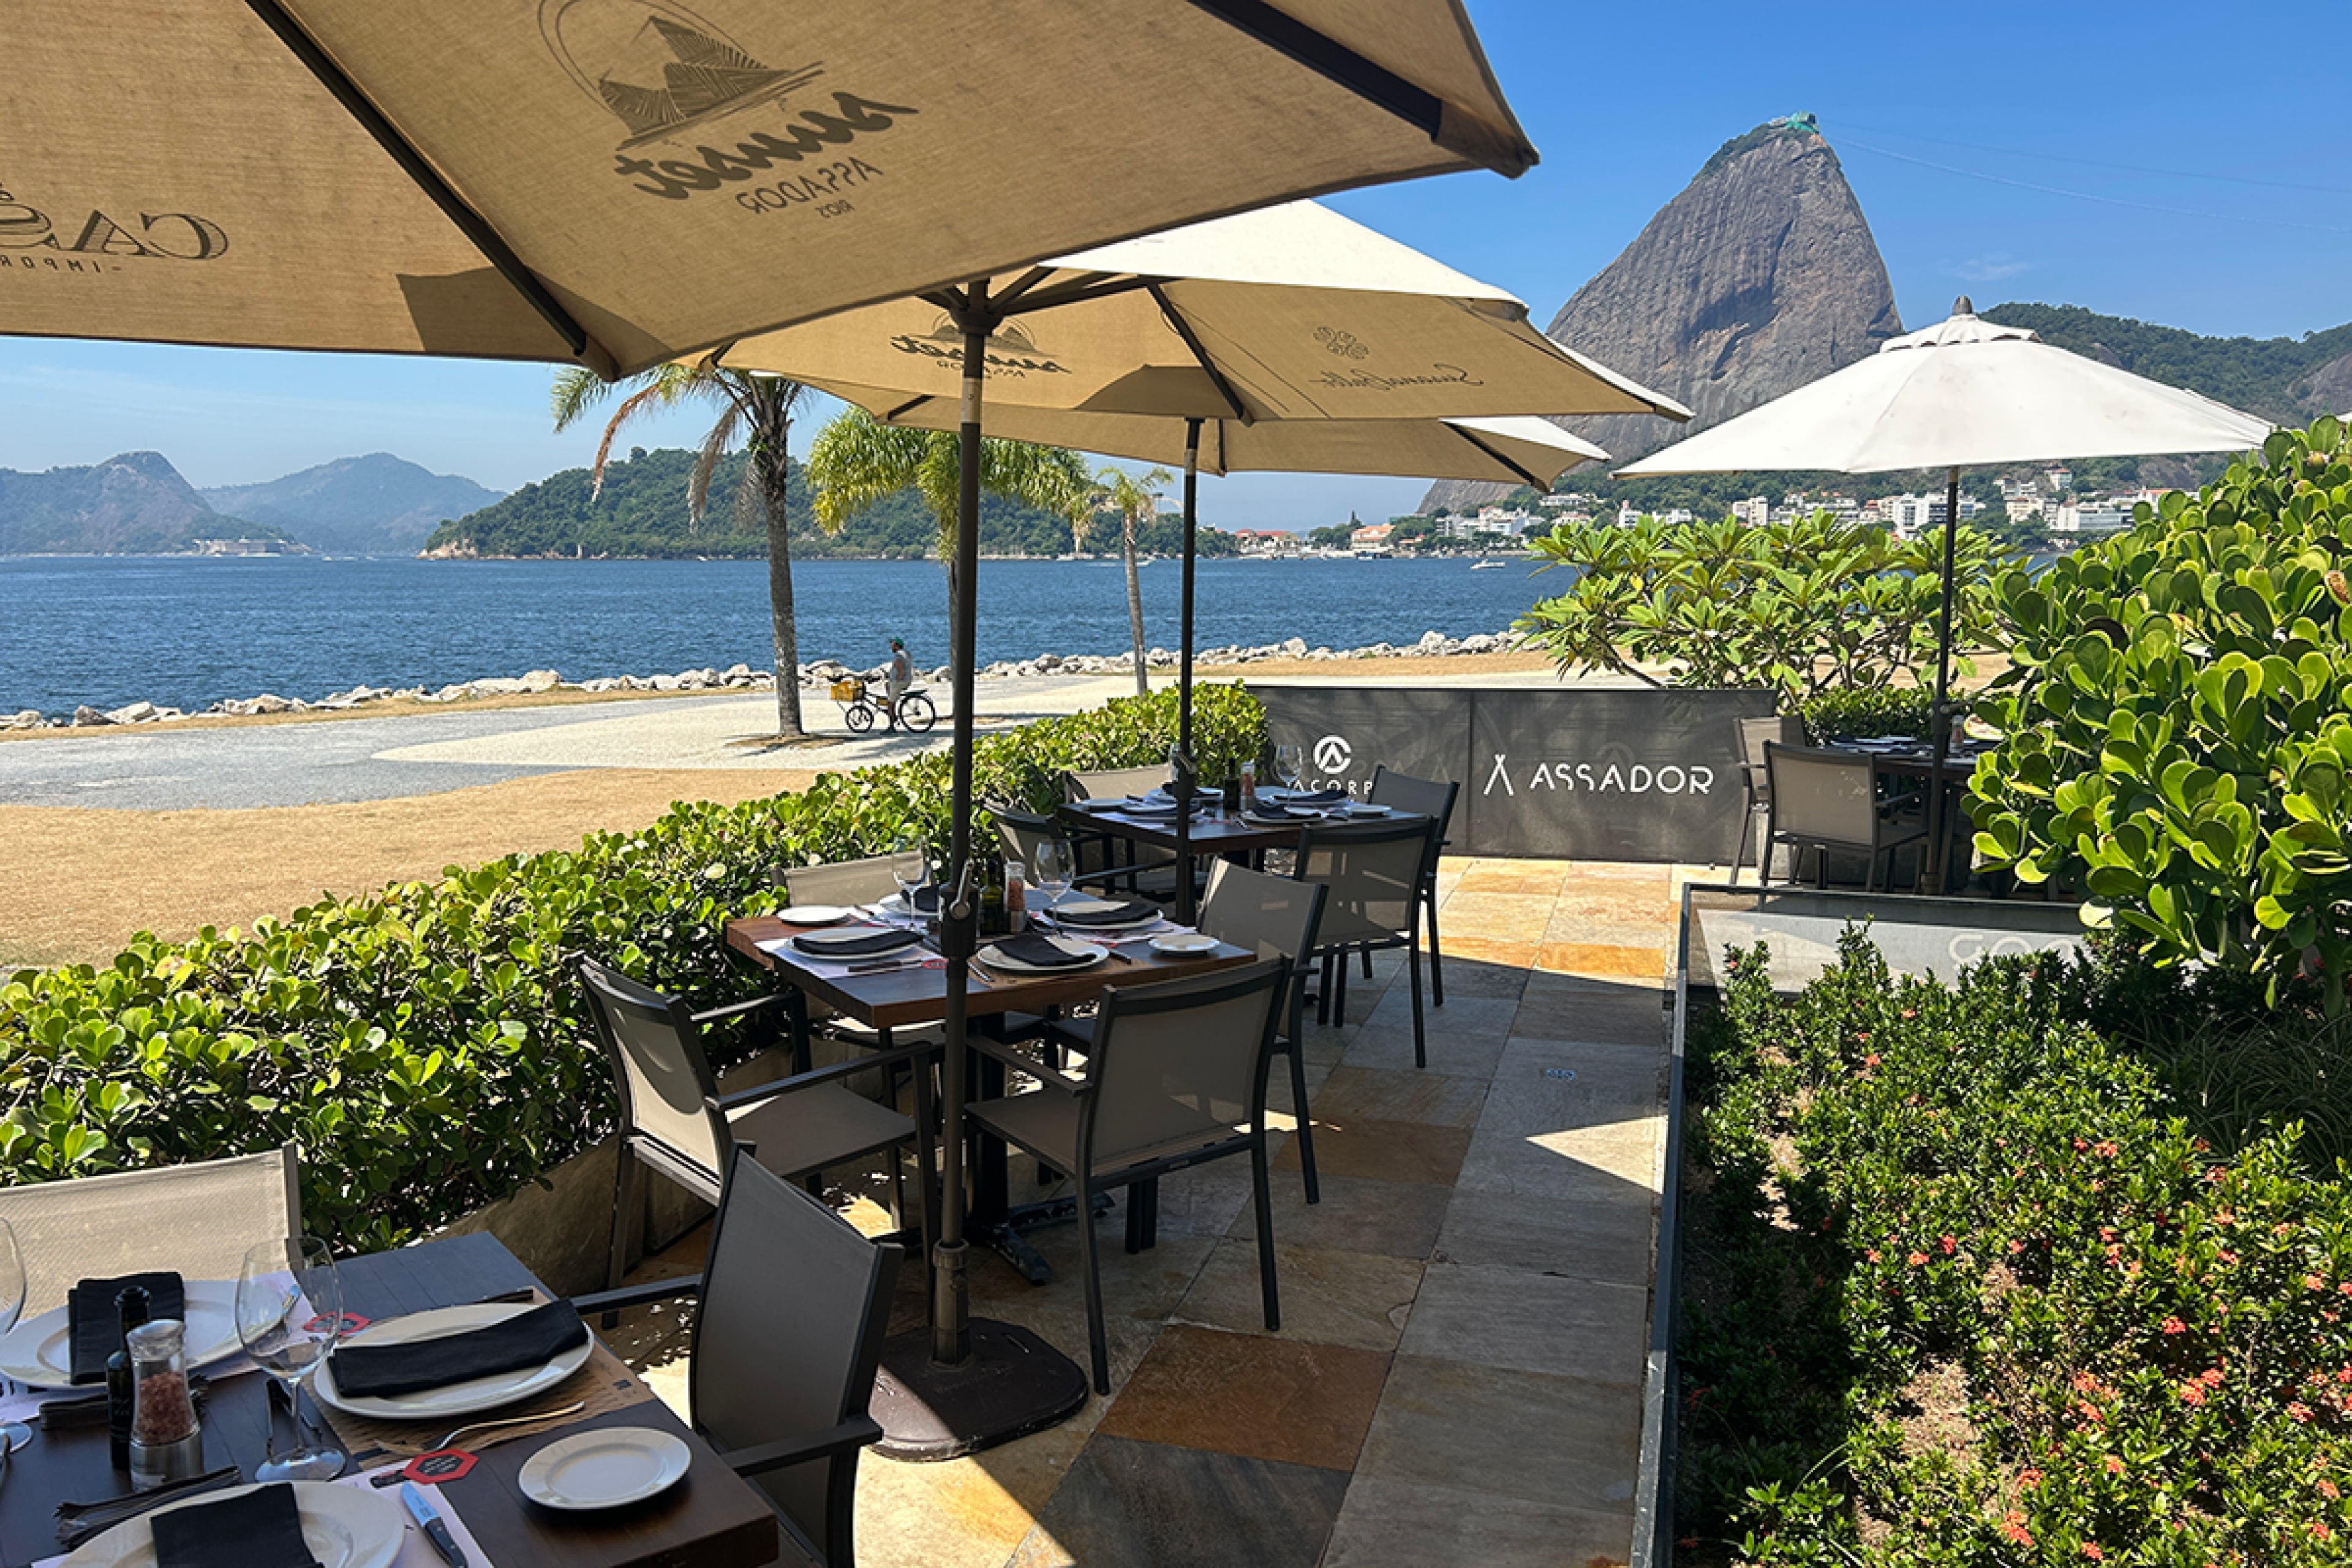 Outdoor patio overlooking the ocean at Brazilian steakhouse